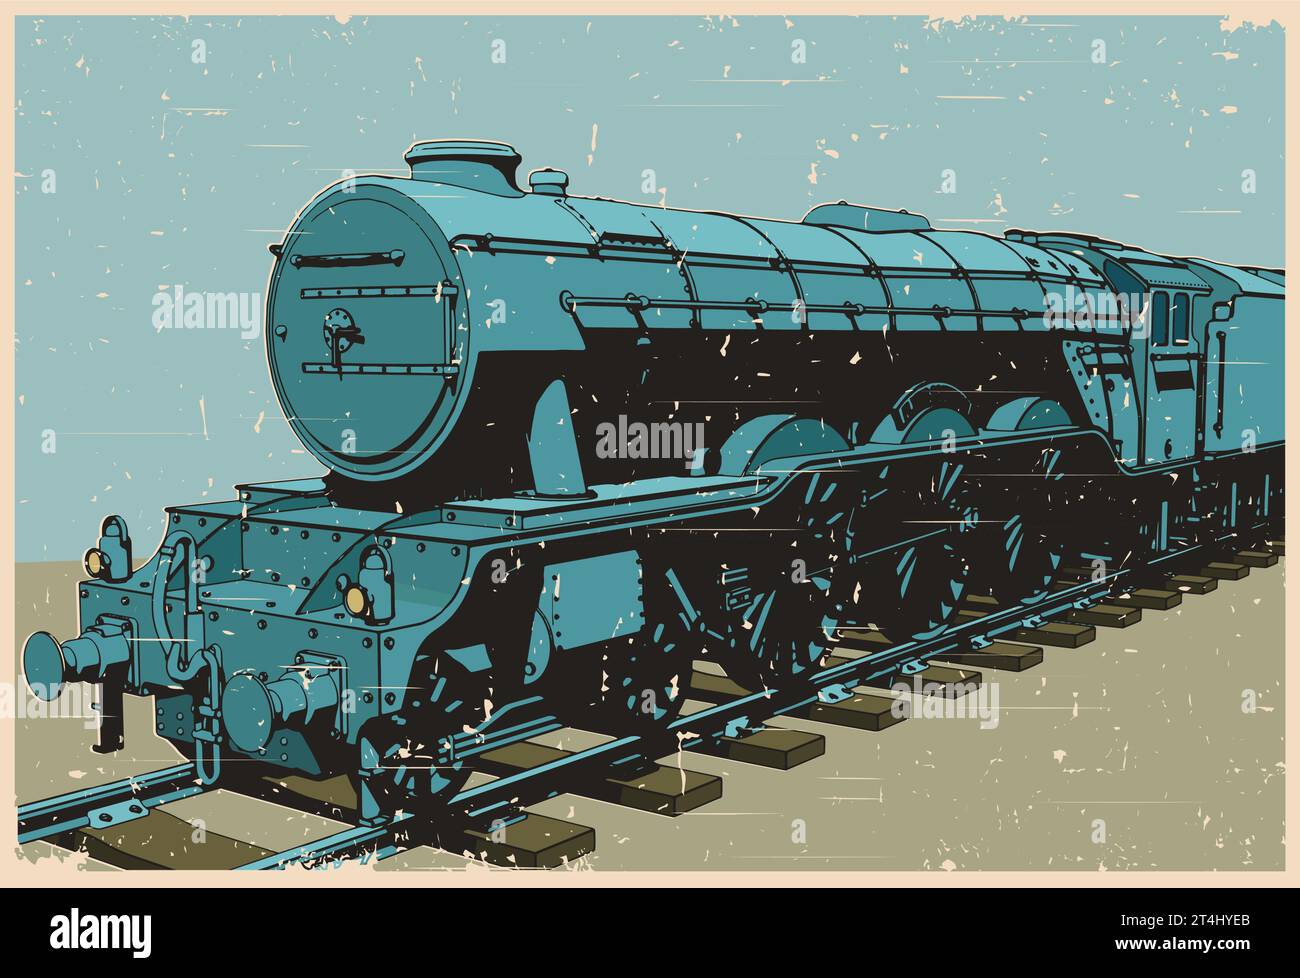 Illustration vectorielle stylisée d'une locomotive à vapeur dans le style d'affiche rétro Illustration de Vecteur